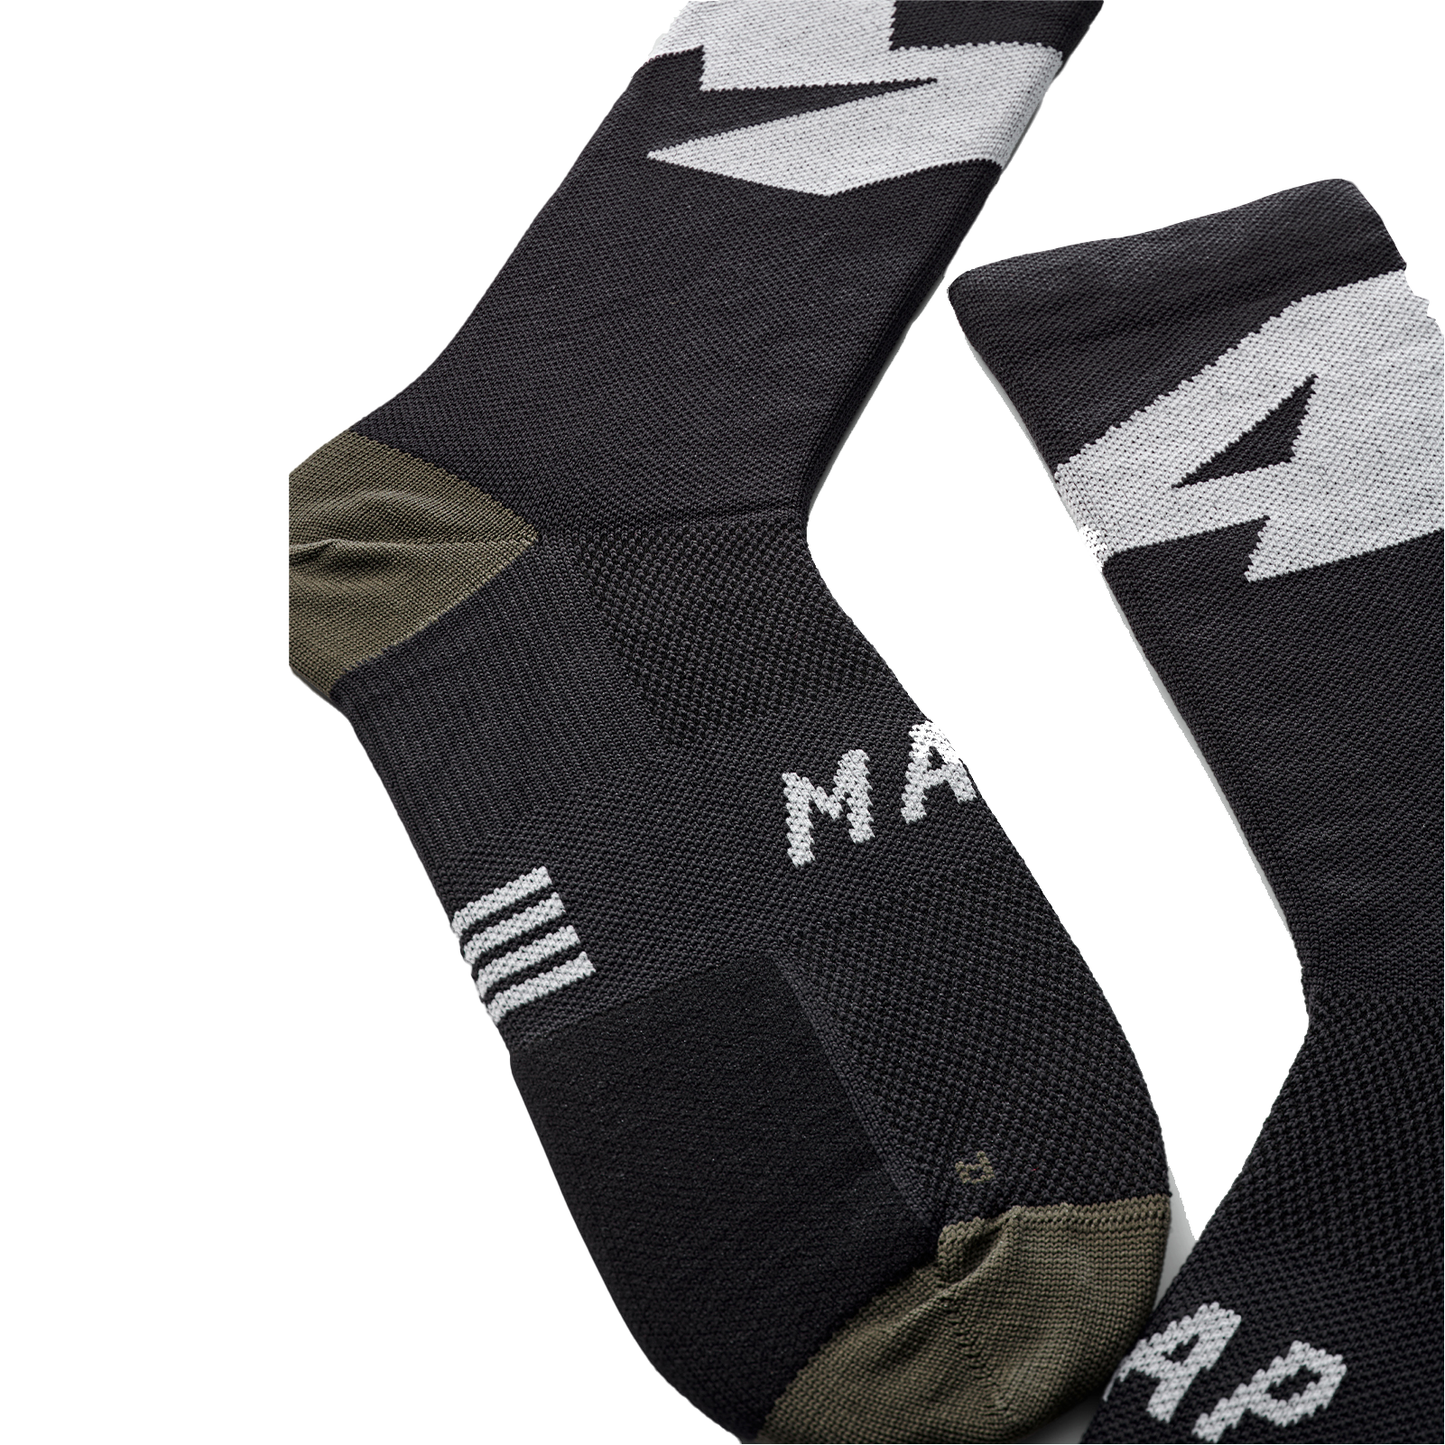 Evolve Sock Black MAS231